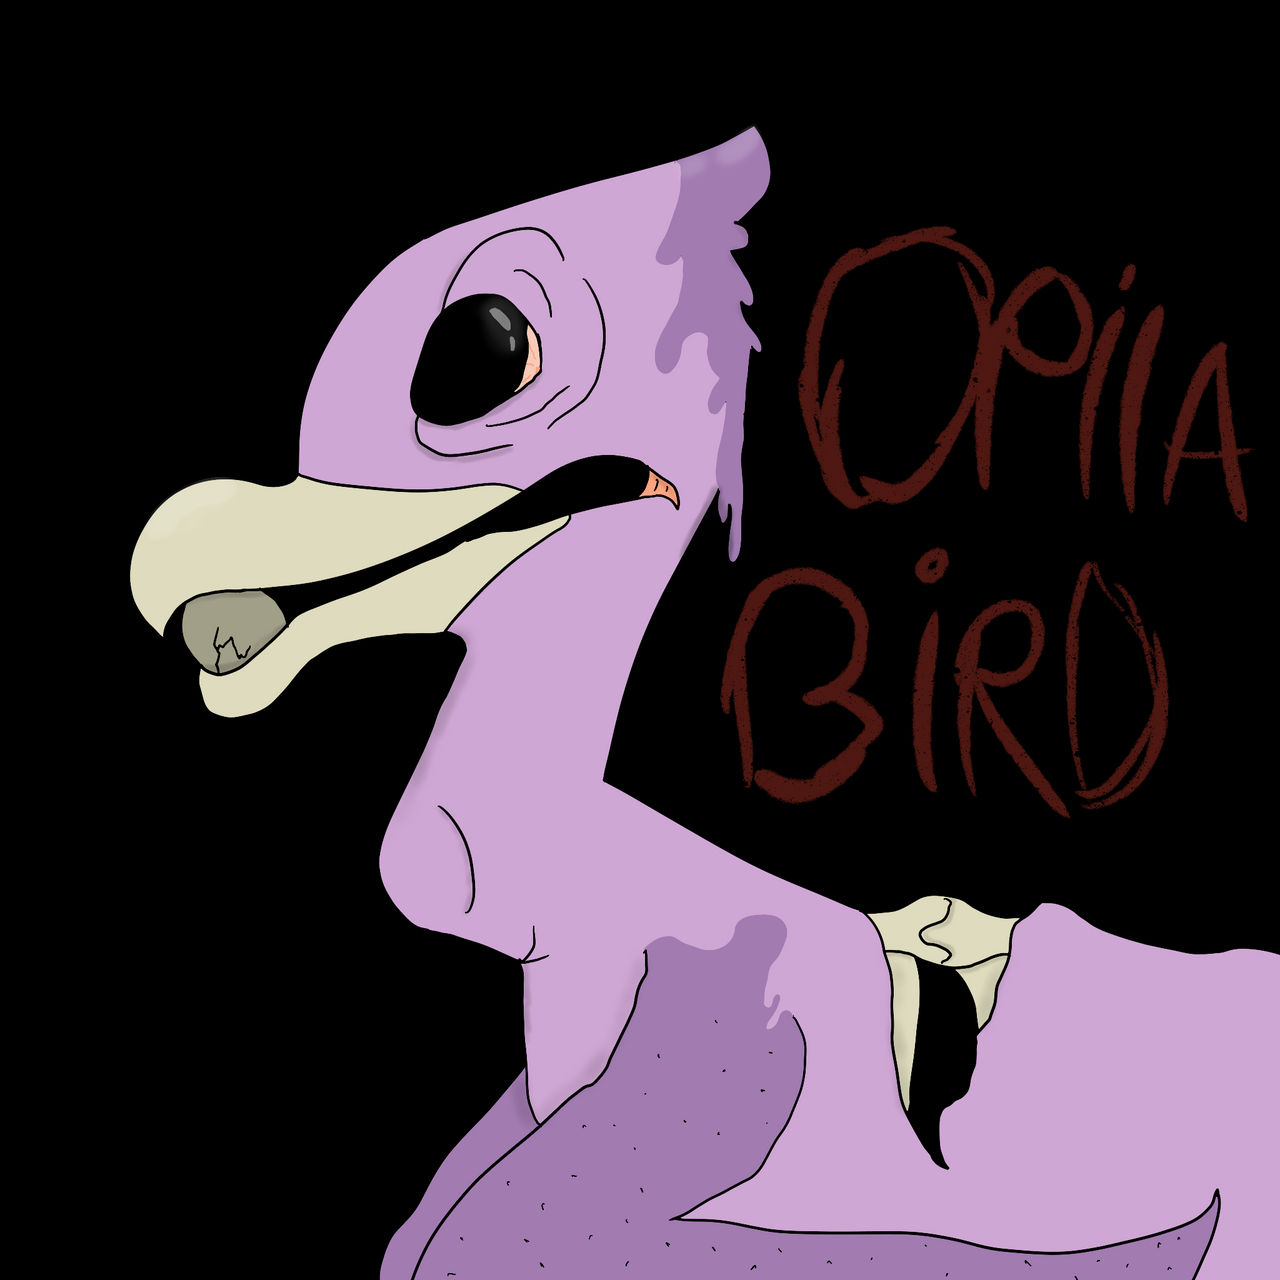 Opila bird (Garten of banban ) by thawbunny26 on DeviantArt